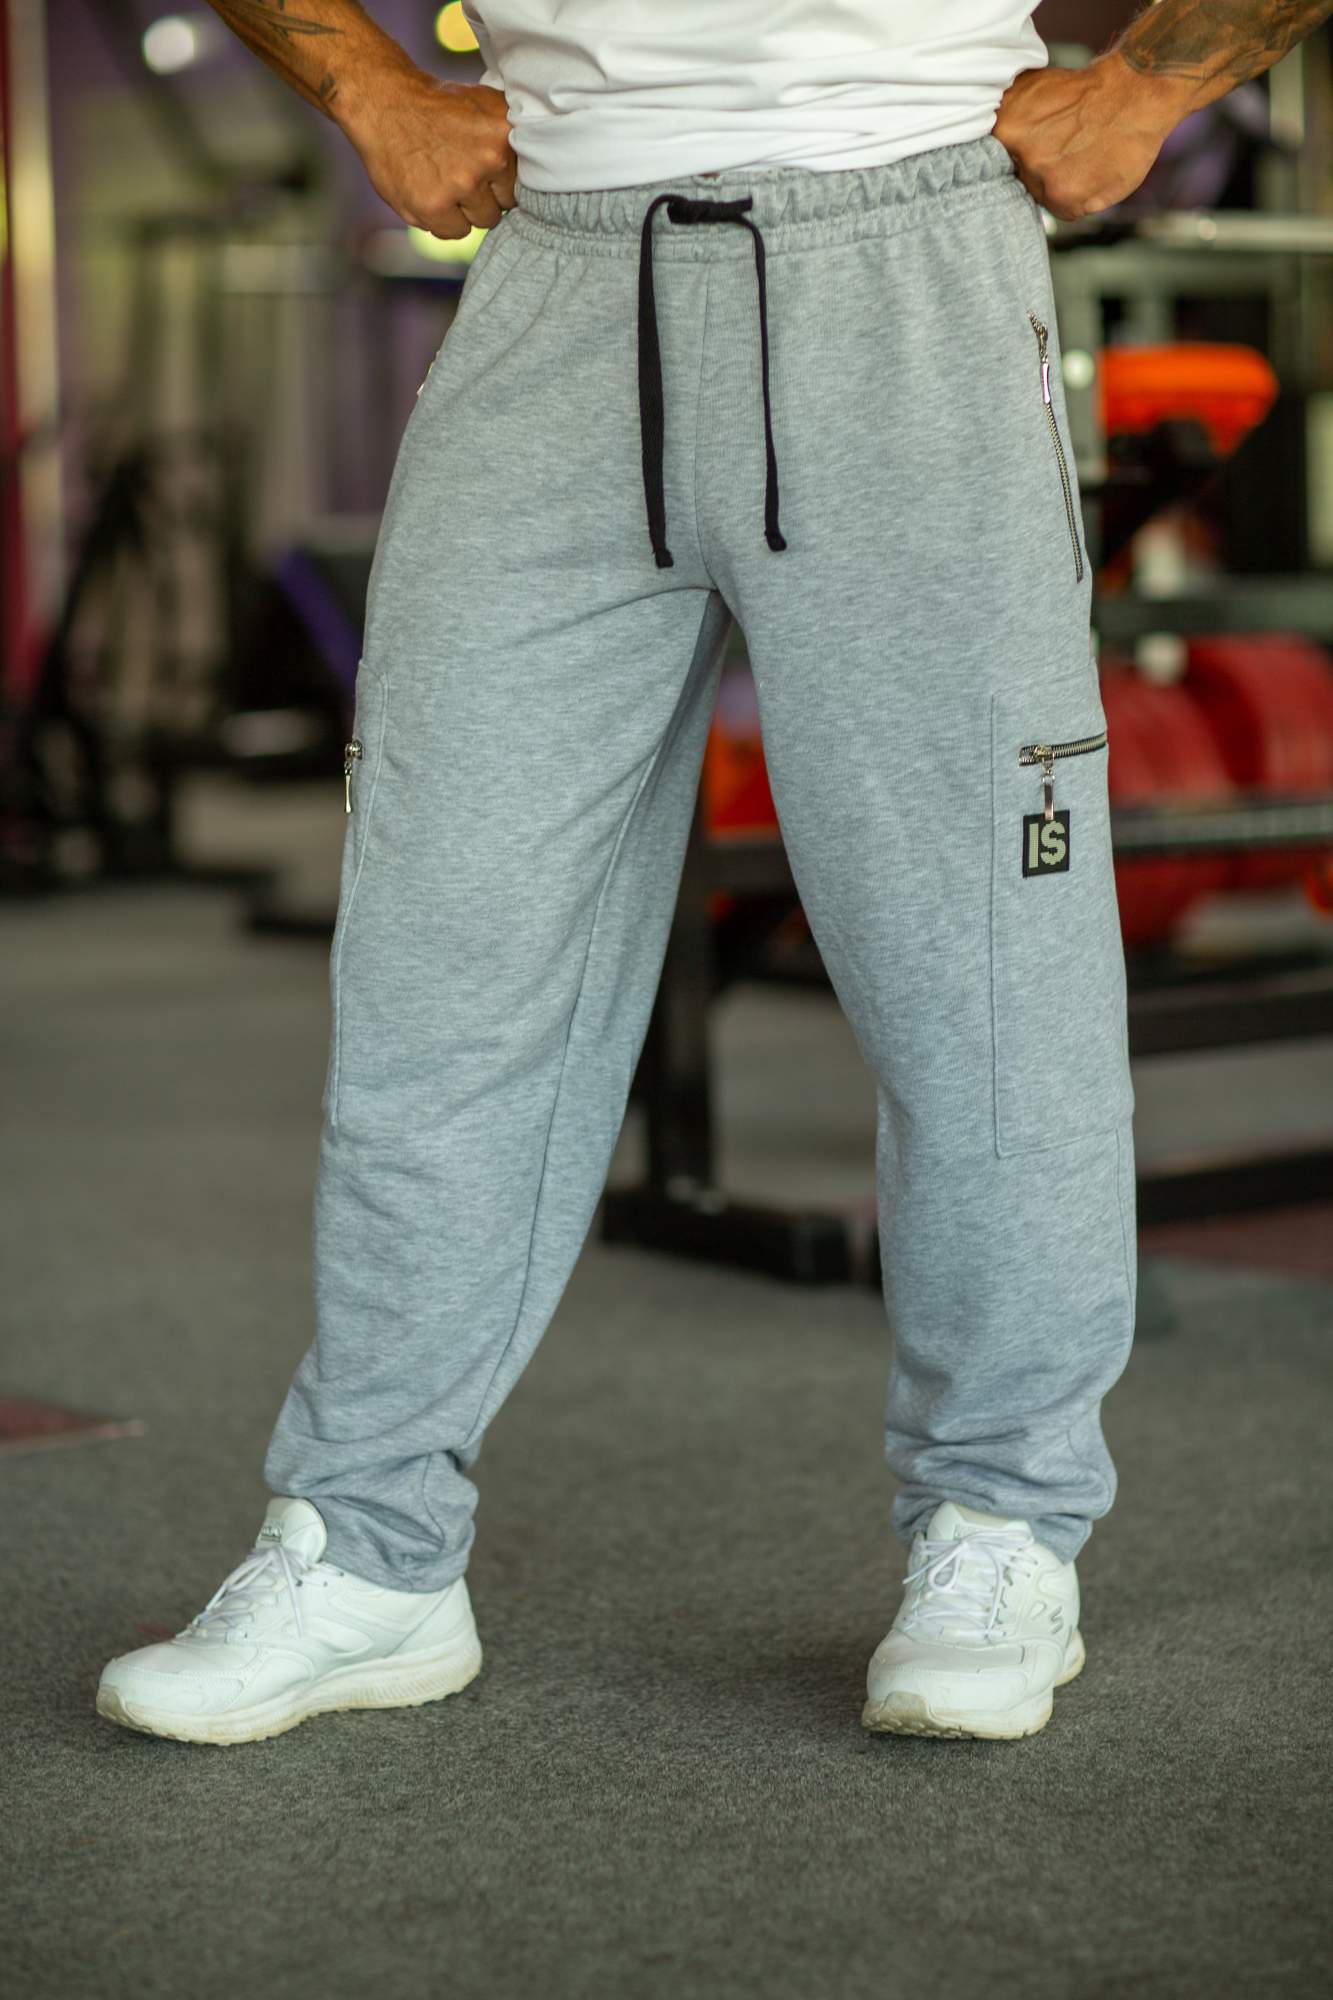 Спортивные брюки мужские INFERNO style Б-006-000 серые S - купить в Москве, цены на Мегамаркет | 600015387593